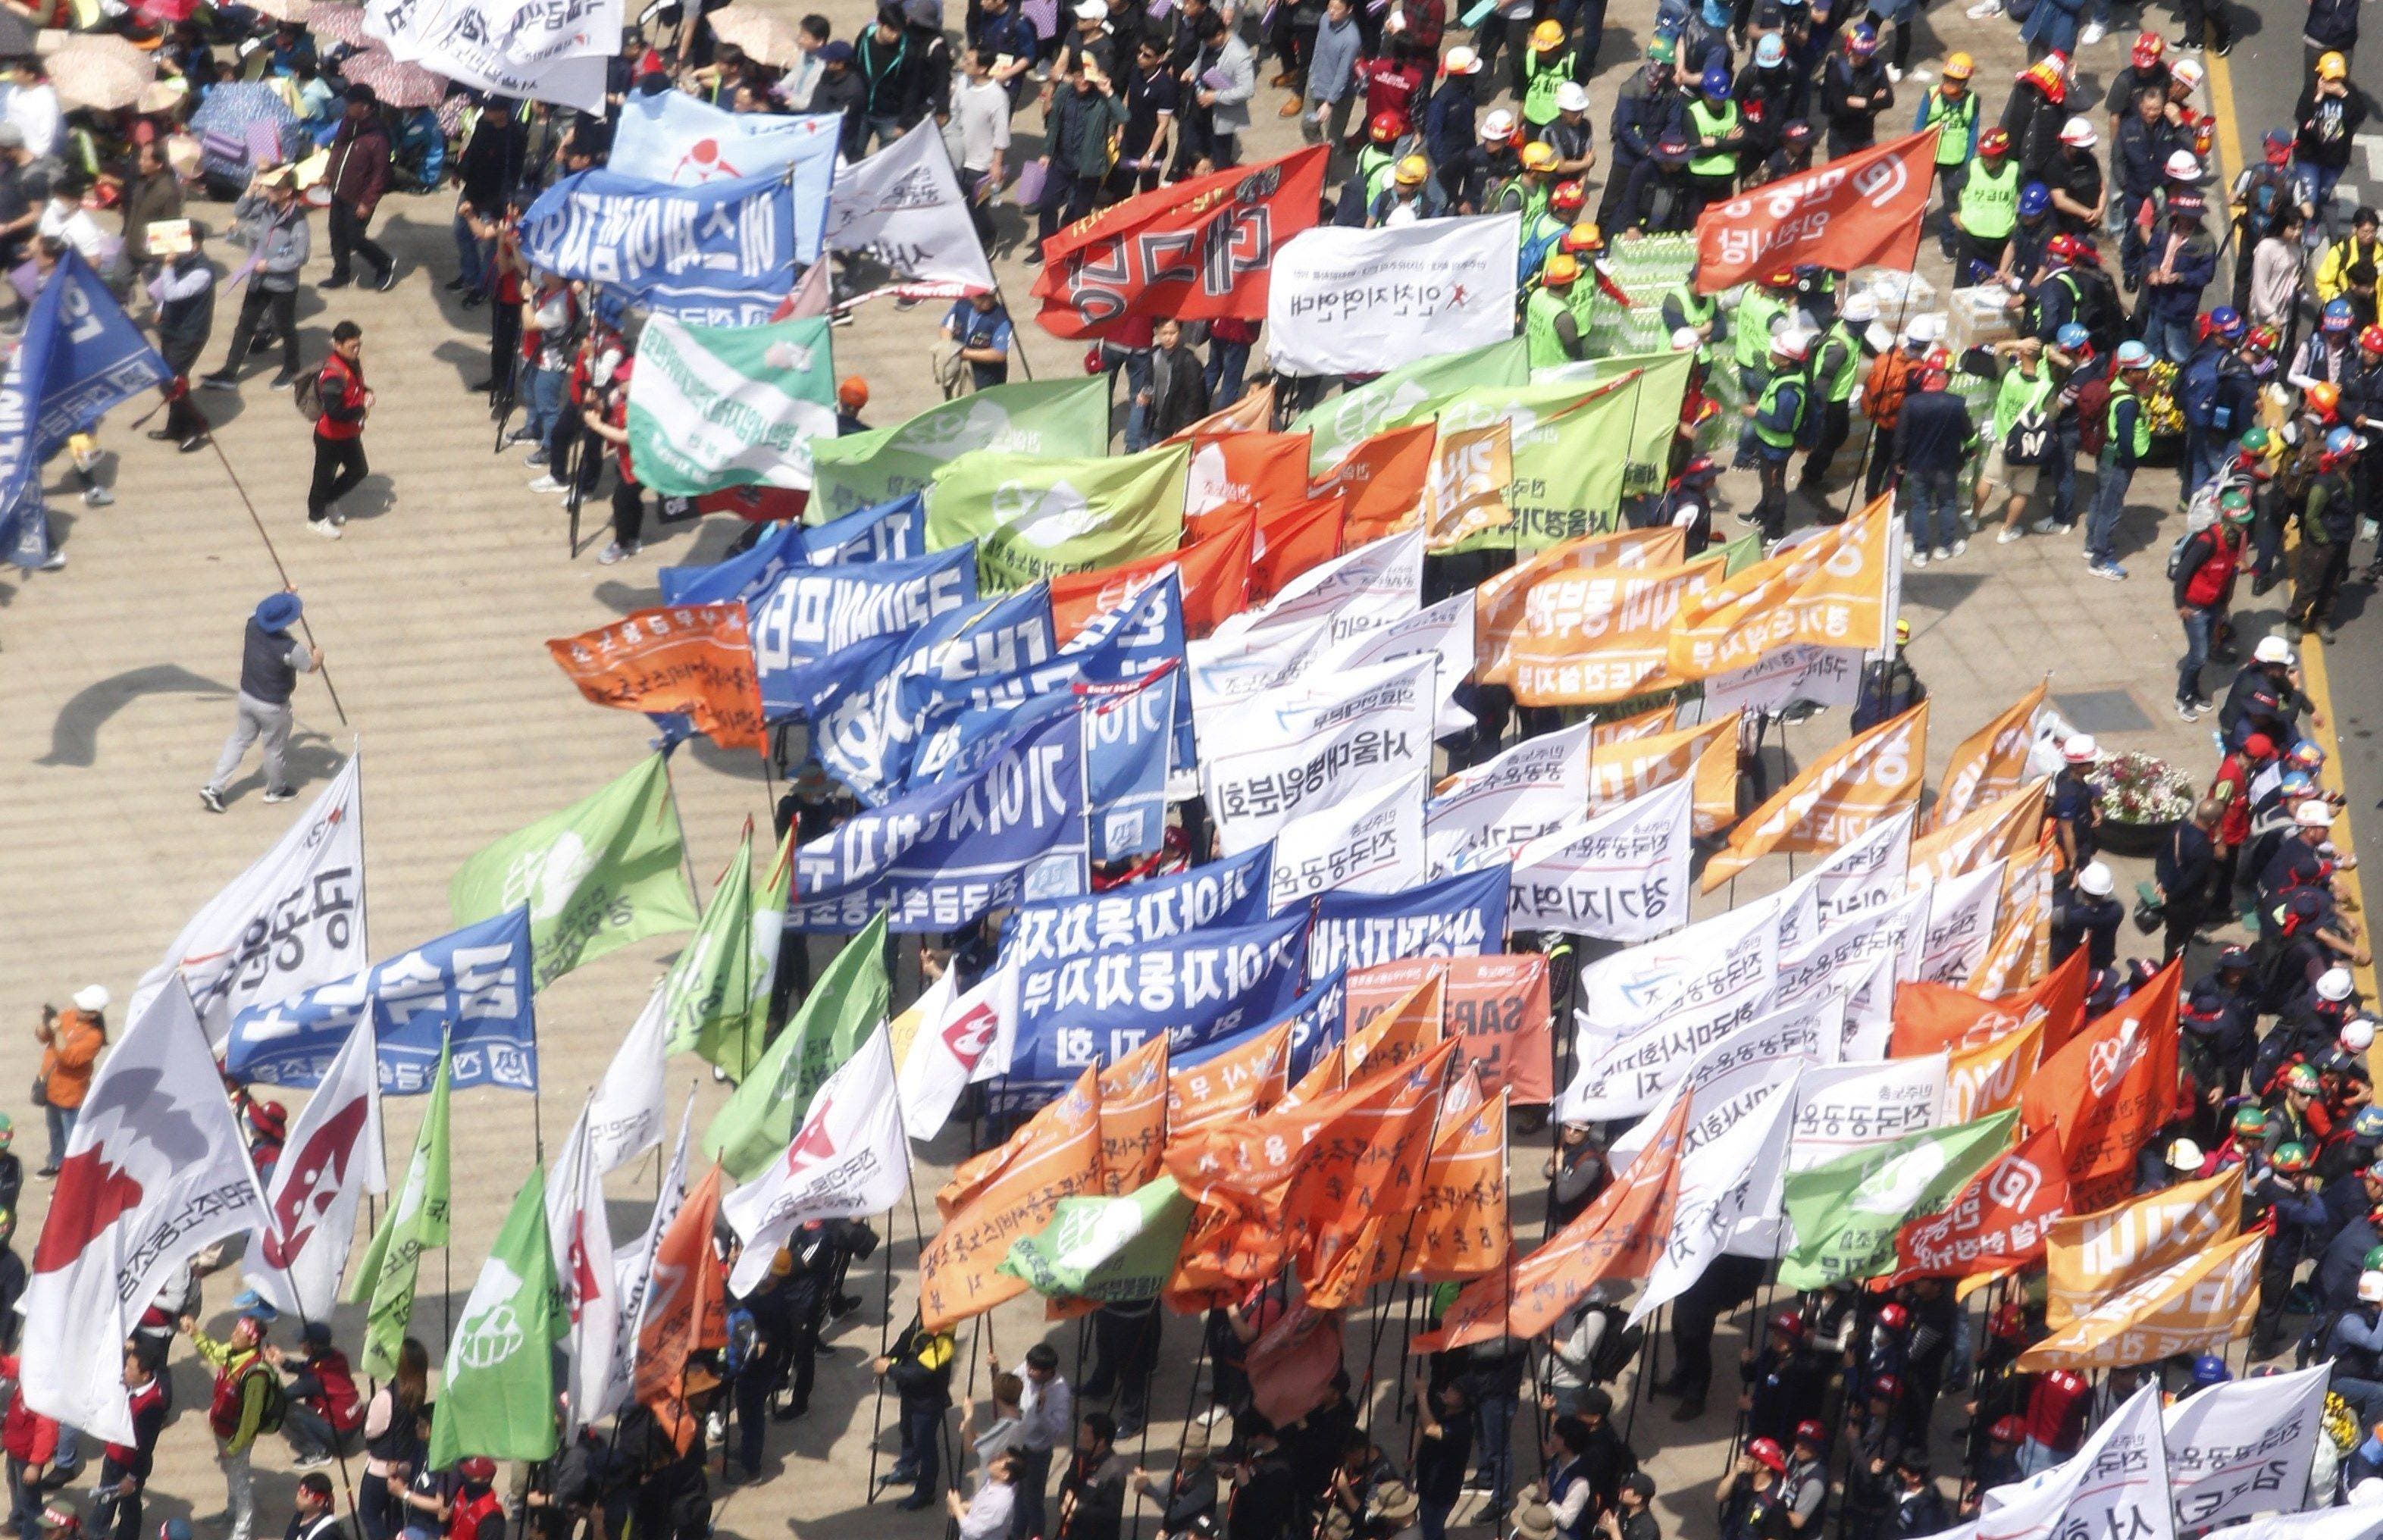 KHC01. SEÚL (COREA DEL SUR), 01/05/2019.- Miembros de la Confederación de Sindicatos de Corea del Sur (KCTU) participan en una marcha convocada con motivo del Día Internacional del Trabajo, este miércoles, en Séul (Corea del Sur). Cerca de 30.000 personas participaron en la protesta para pedir una reforma laboral que mejore las condiciones laborales. EFE/ Kim Hee-chul